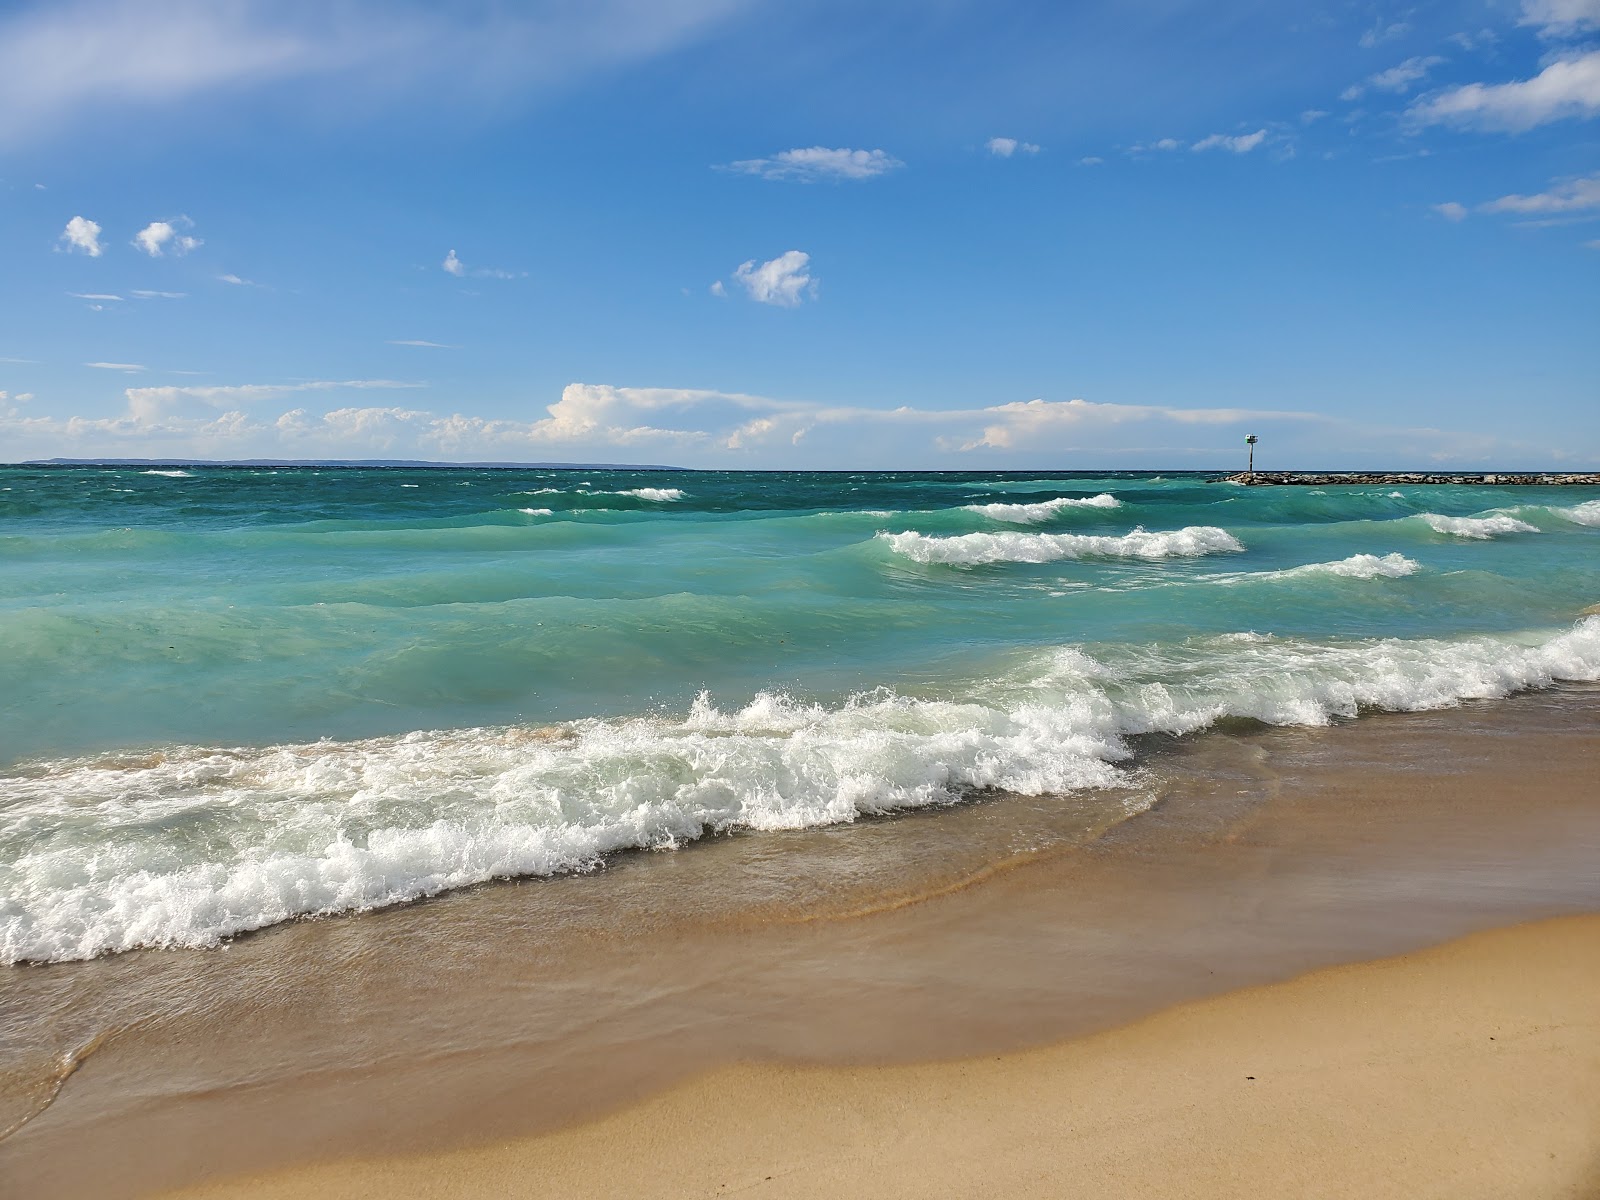 Fotografie cu Van's Beach - locul popular printre cunoscătorii de relaxare